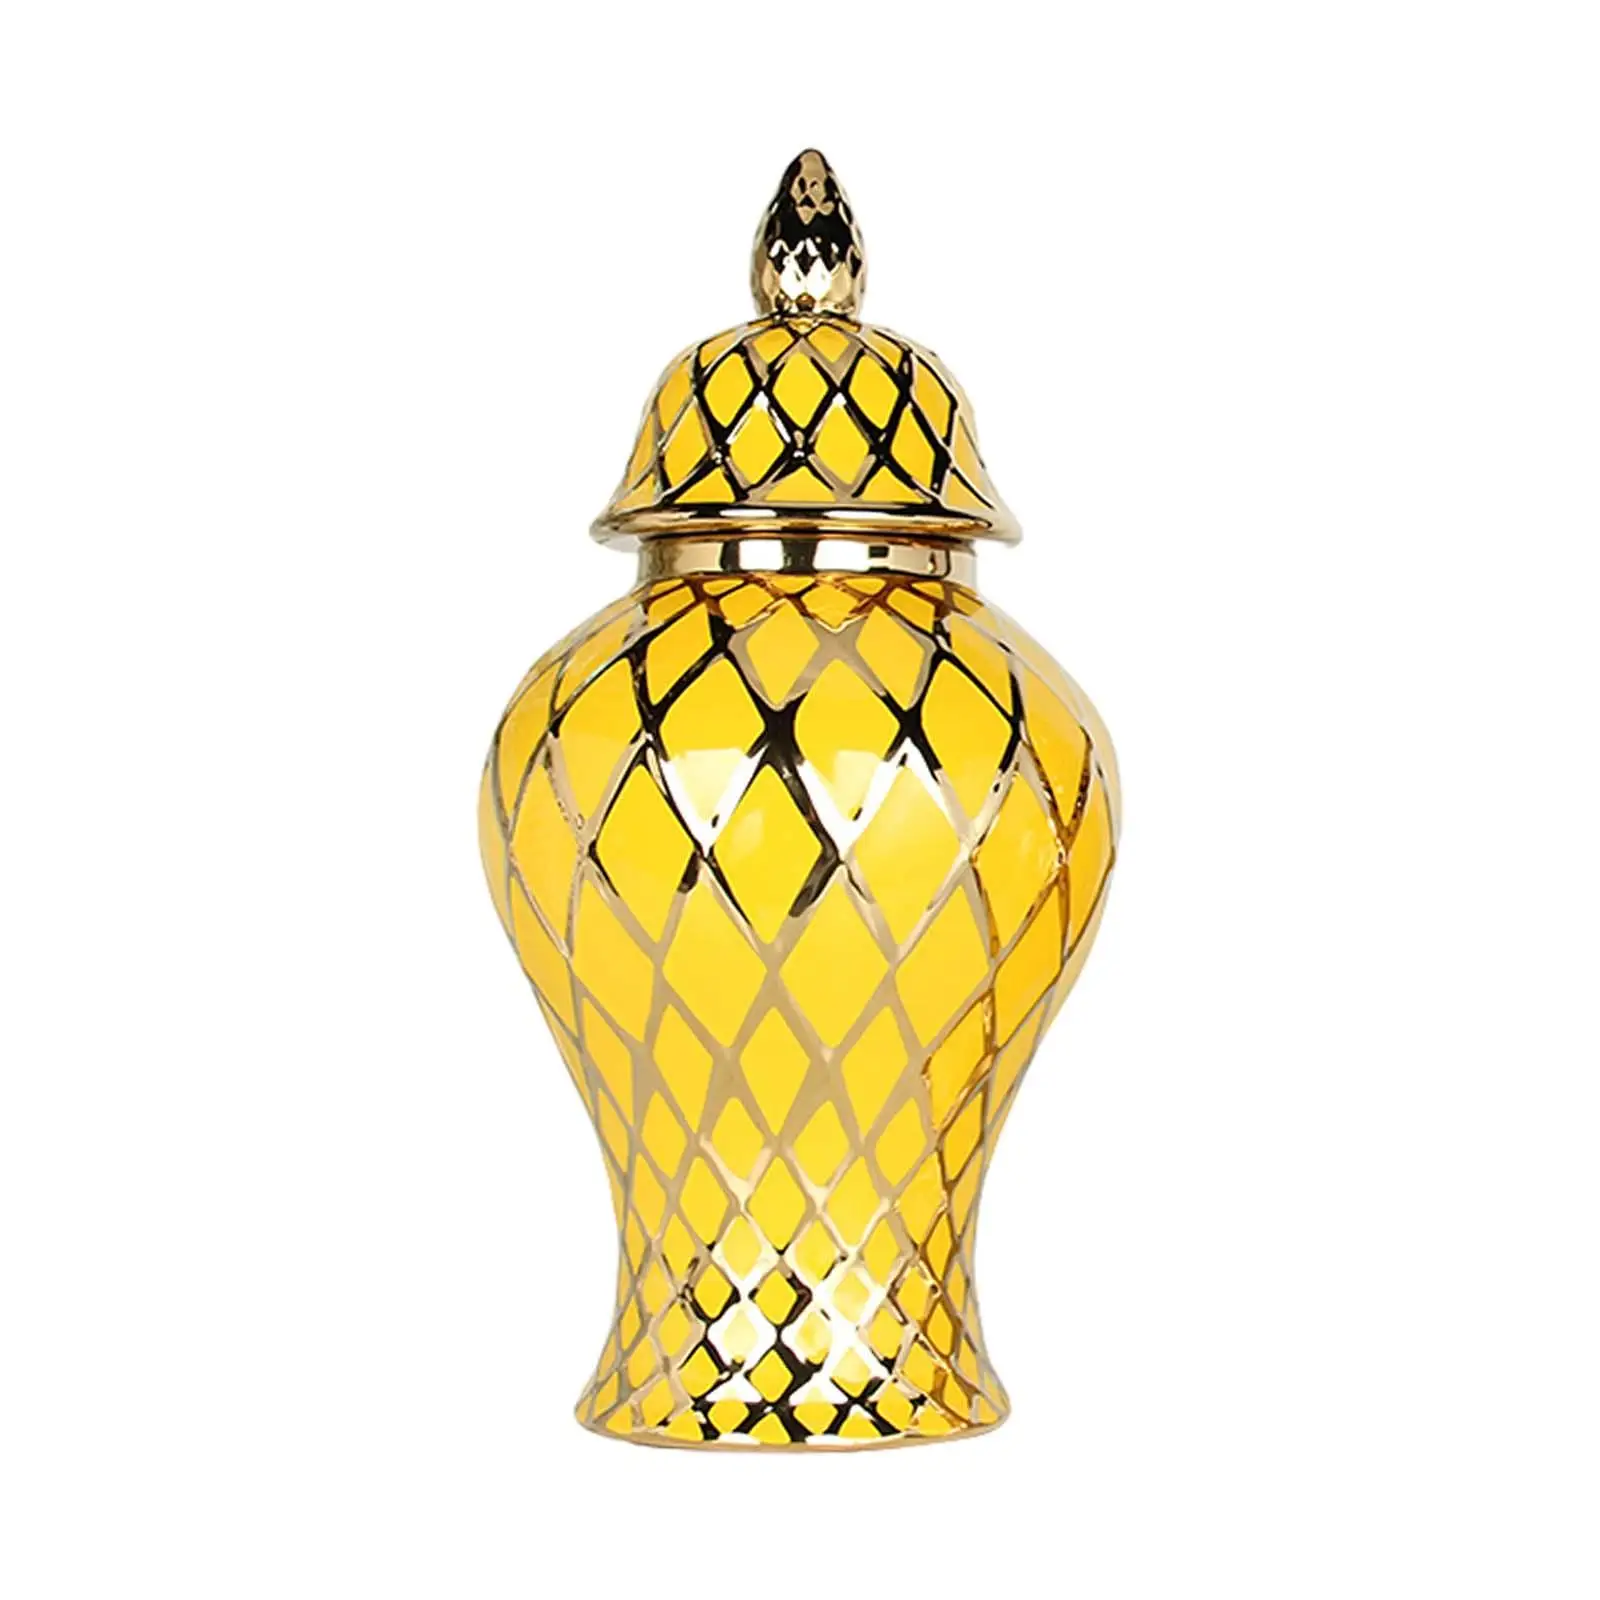 Ceramic Vase Chinese Handicraft Ornaments with Lid Porcelain Ginger Jar for Storage Tank Arrangement Weddings Office Livingroom